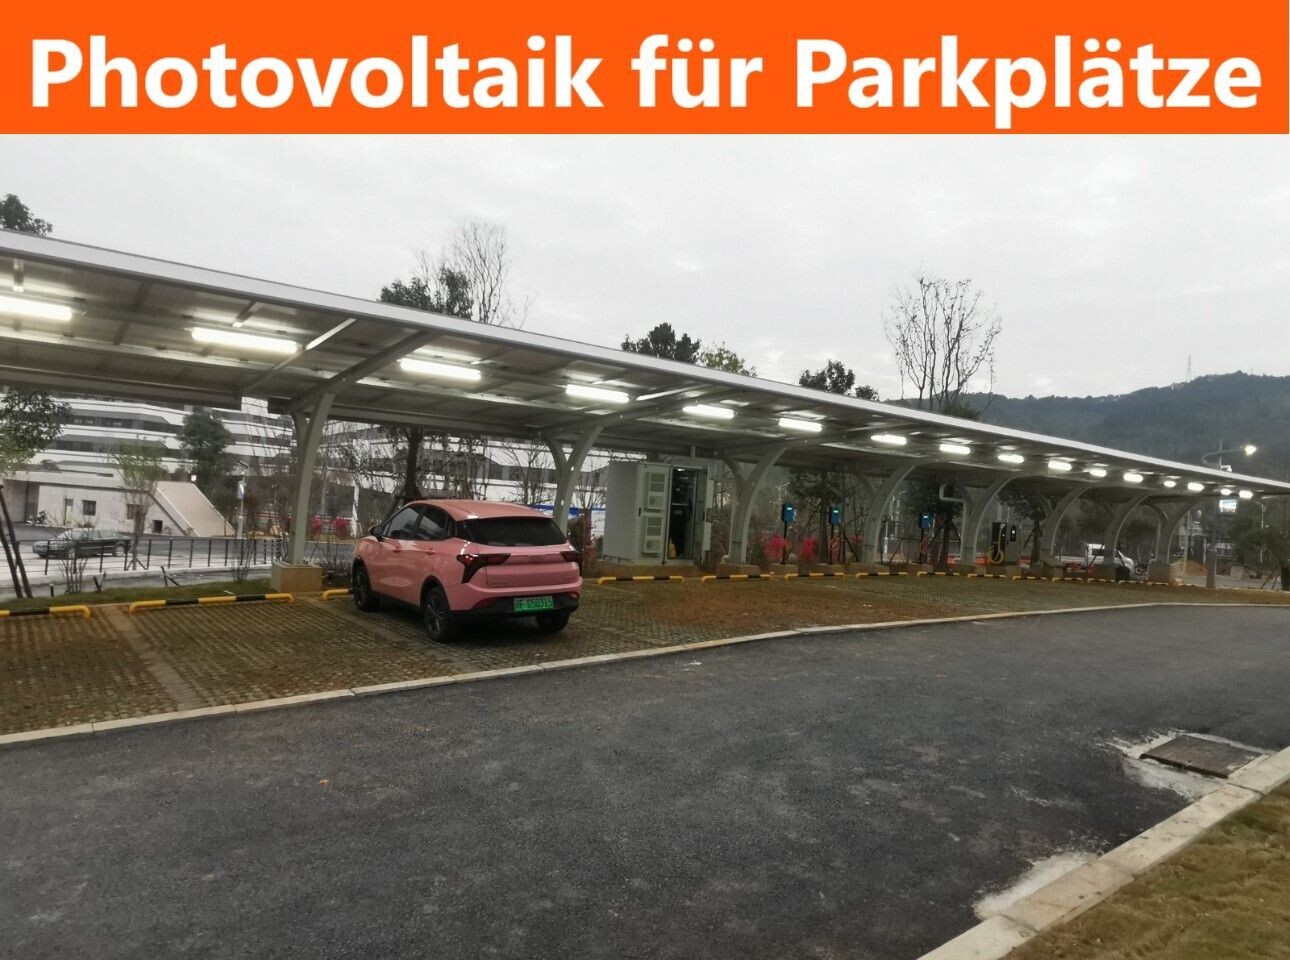 620 kW PV-Komplettanlage für Parkplätze mit Photovoltaik-Überdachung und Solar-Carportsystem.